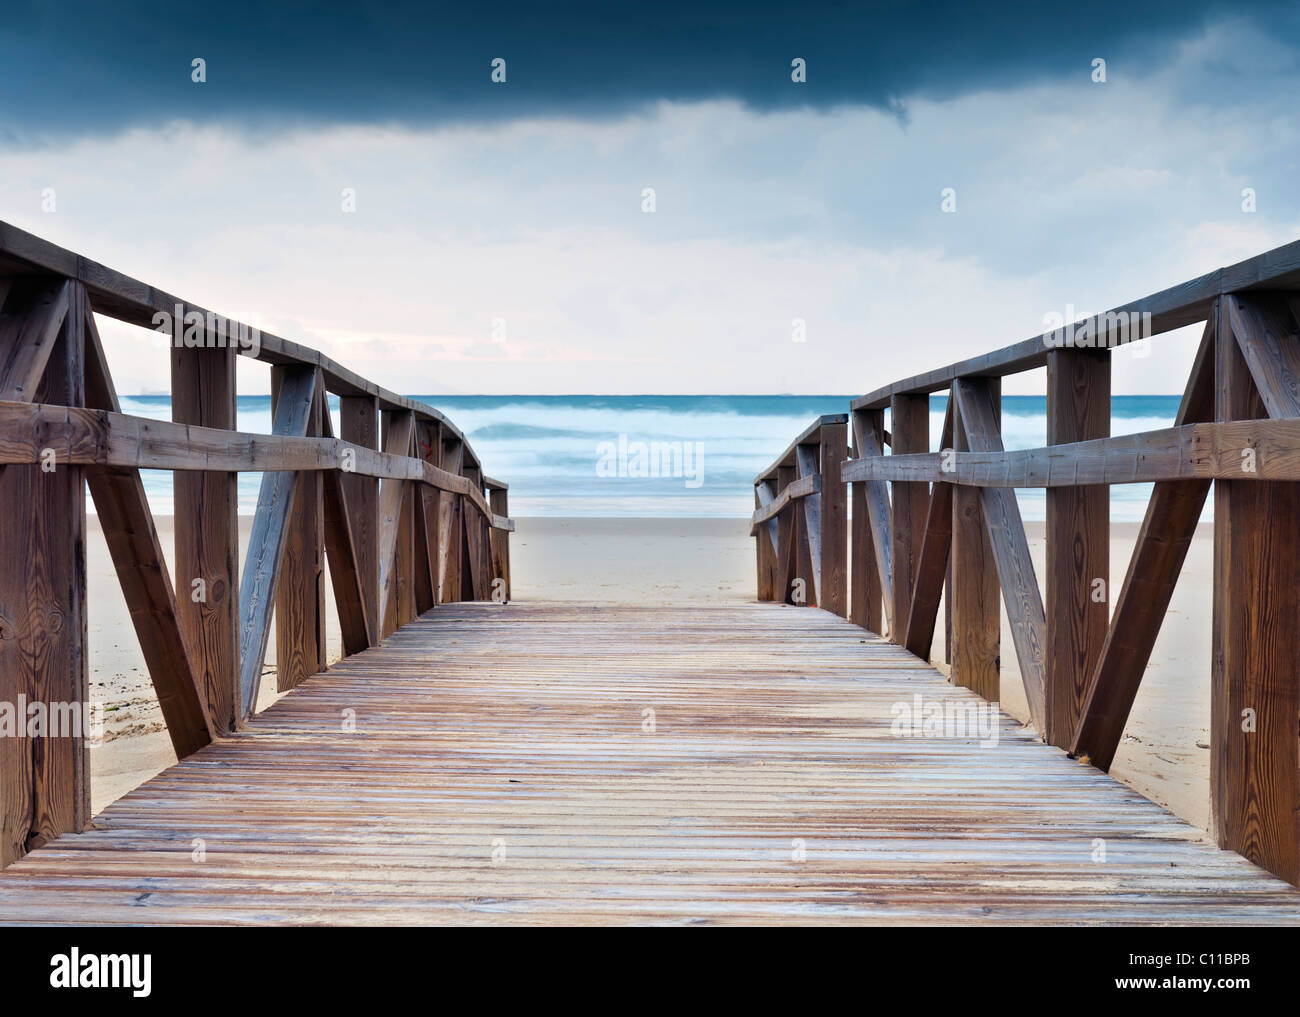 Un chemin en bois menant à la plage. Tarifa, Costa de la Luz, Cadix, Andalousie, espagne. Banque D'Images